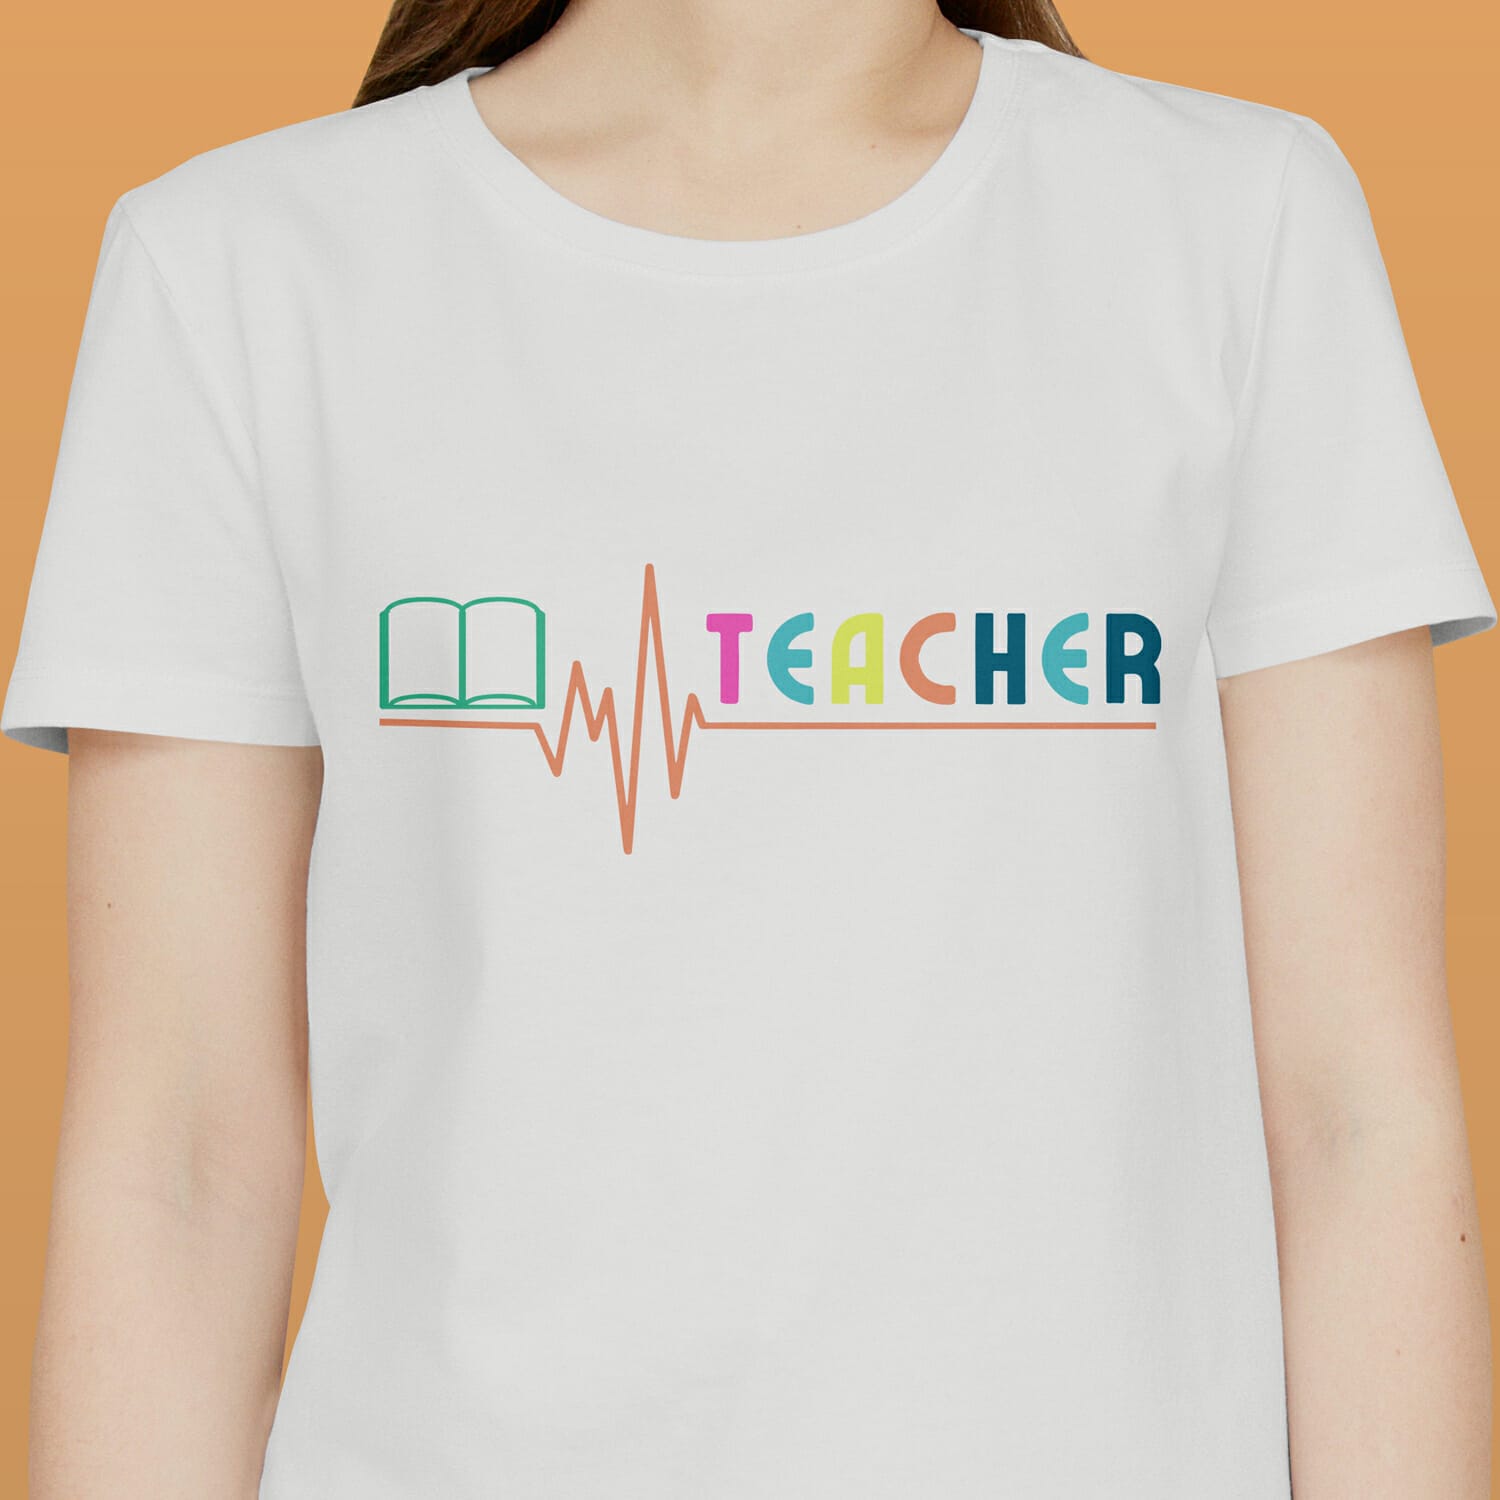 Heart beat T-shirt design for Teacher